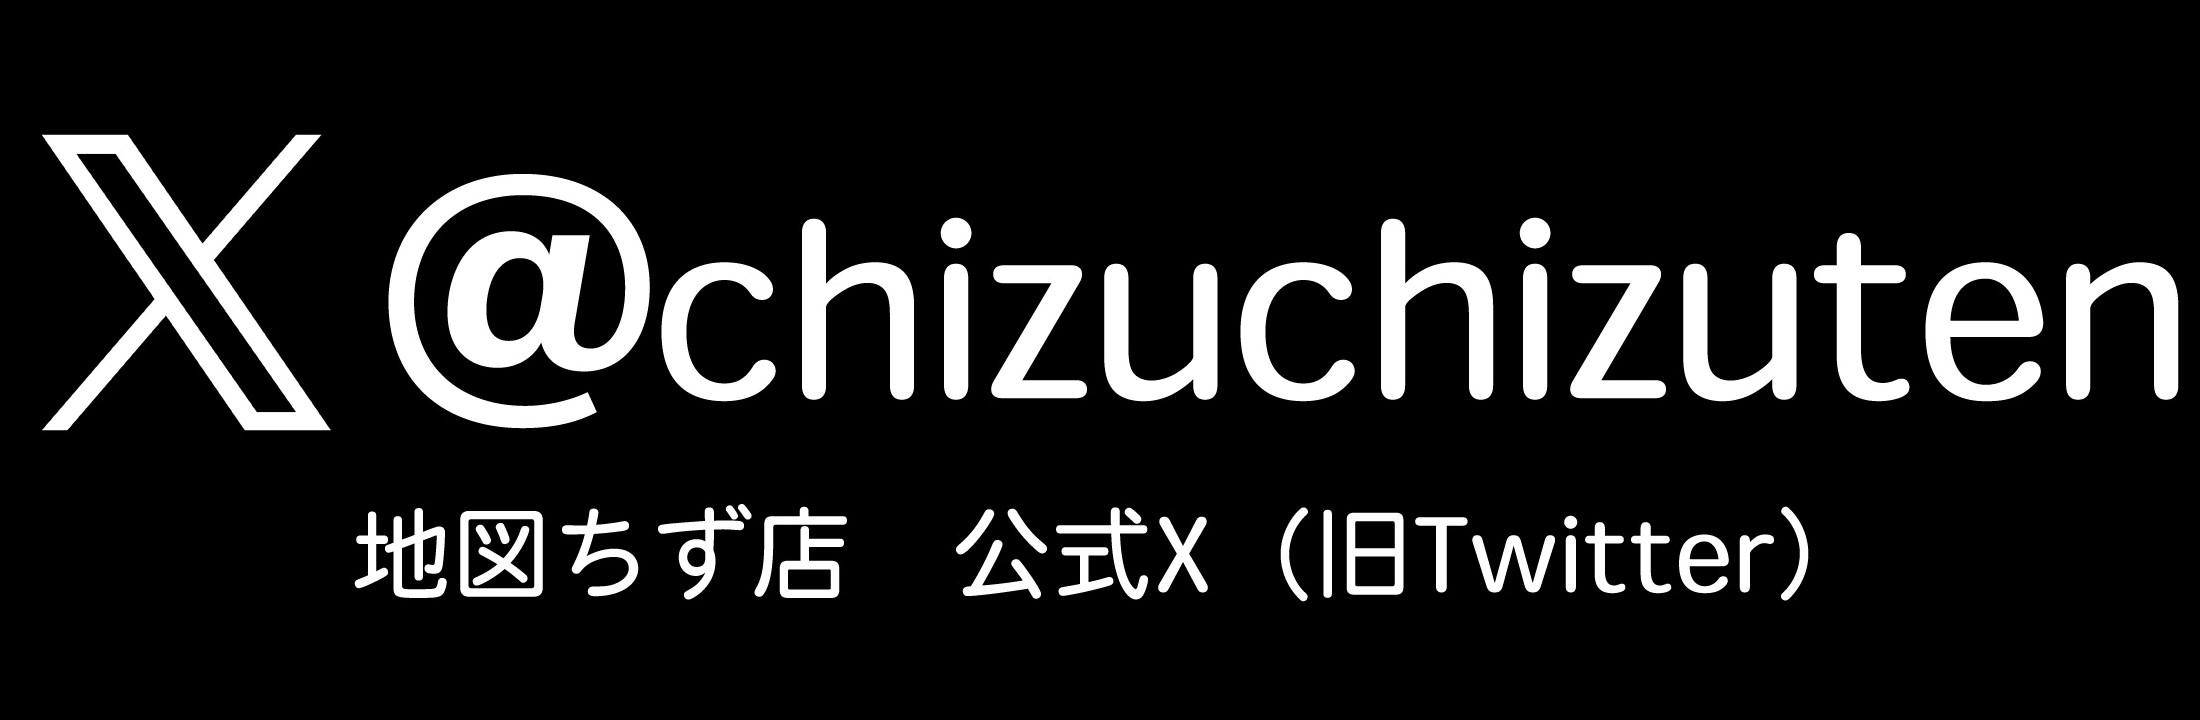 @chizuchizuten 地図ちず店公式Twitter